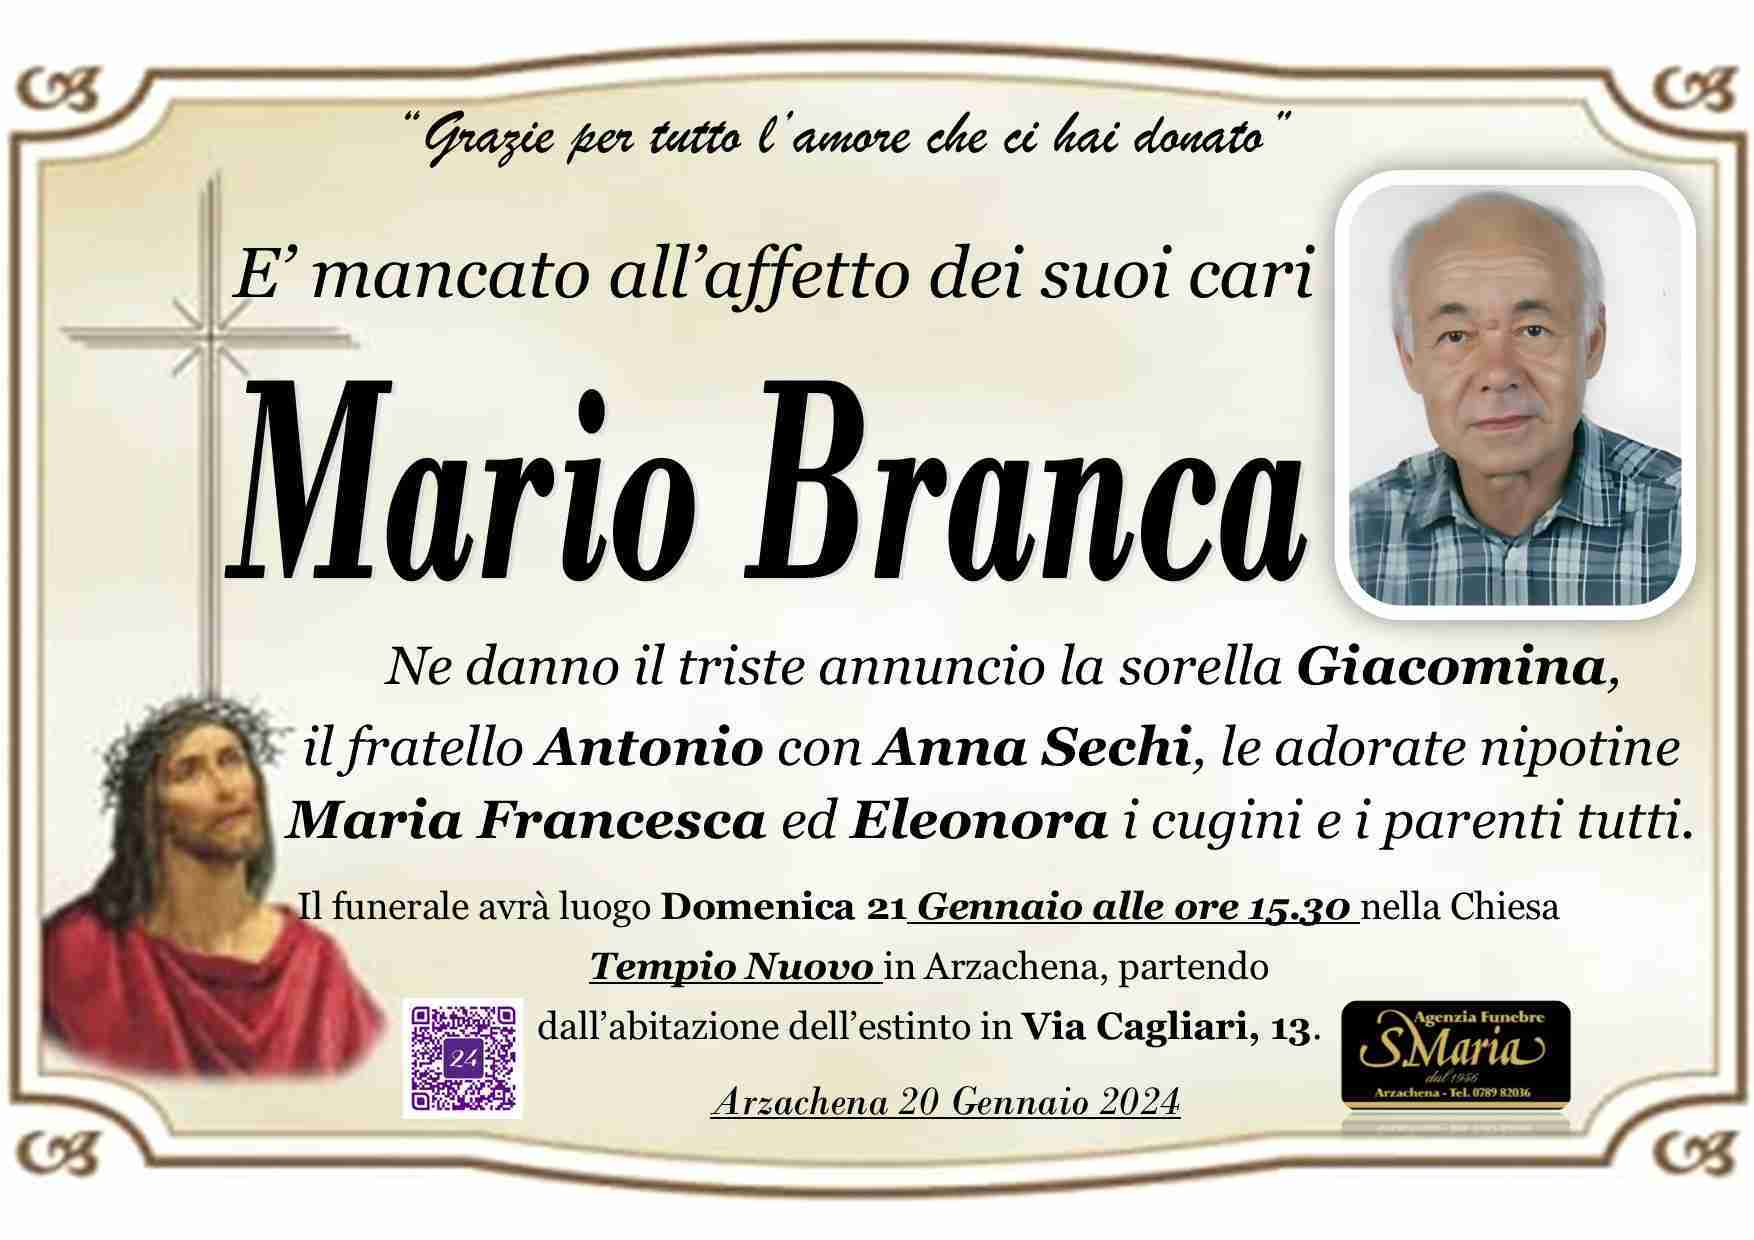 Mario Branca